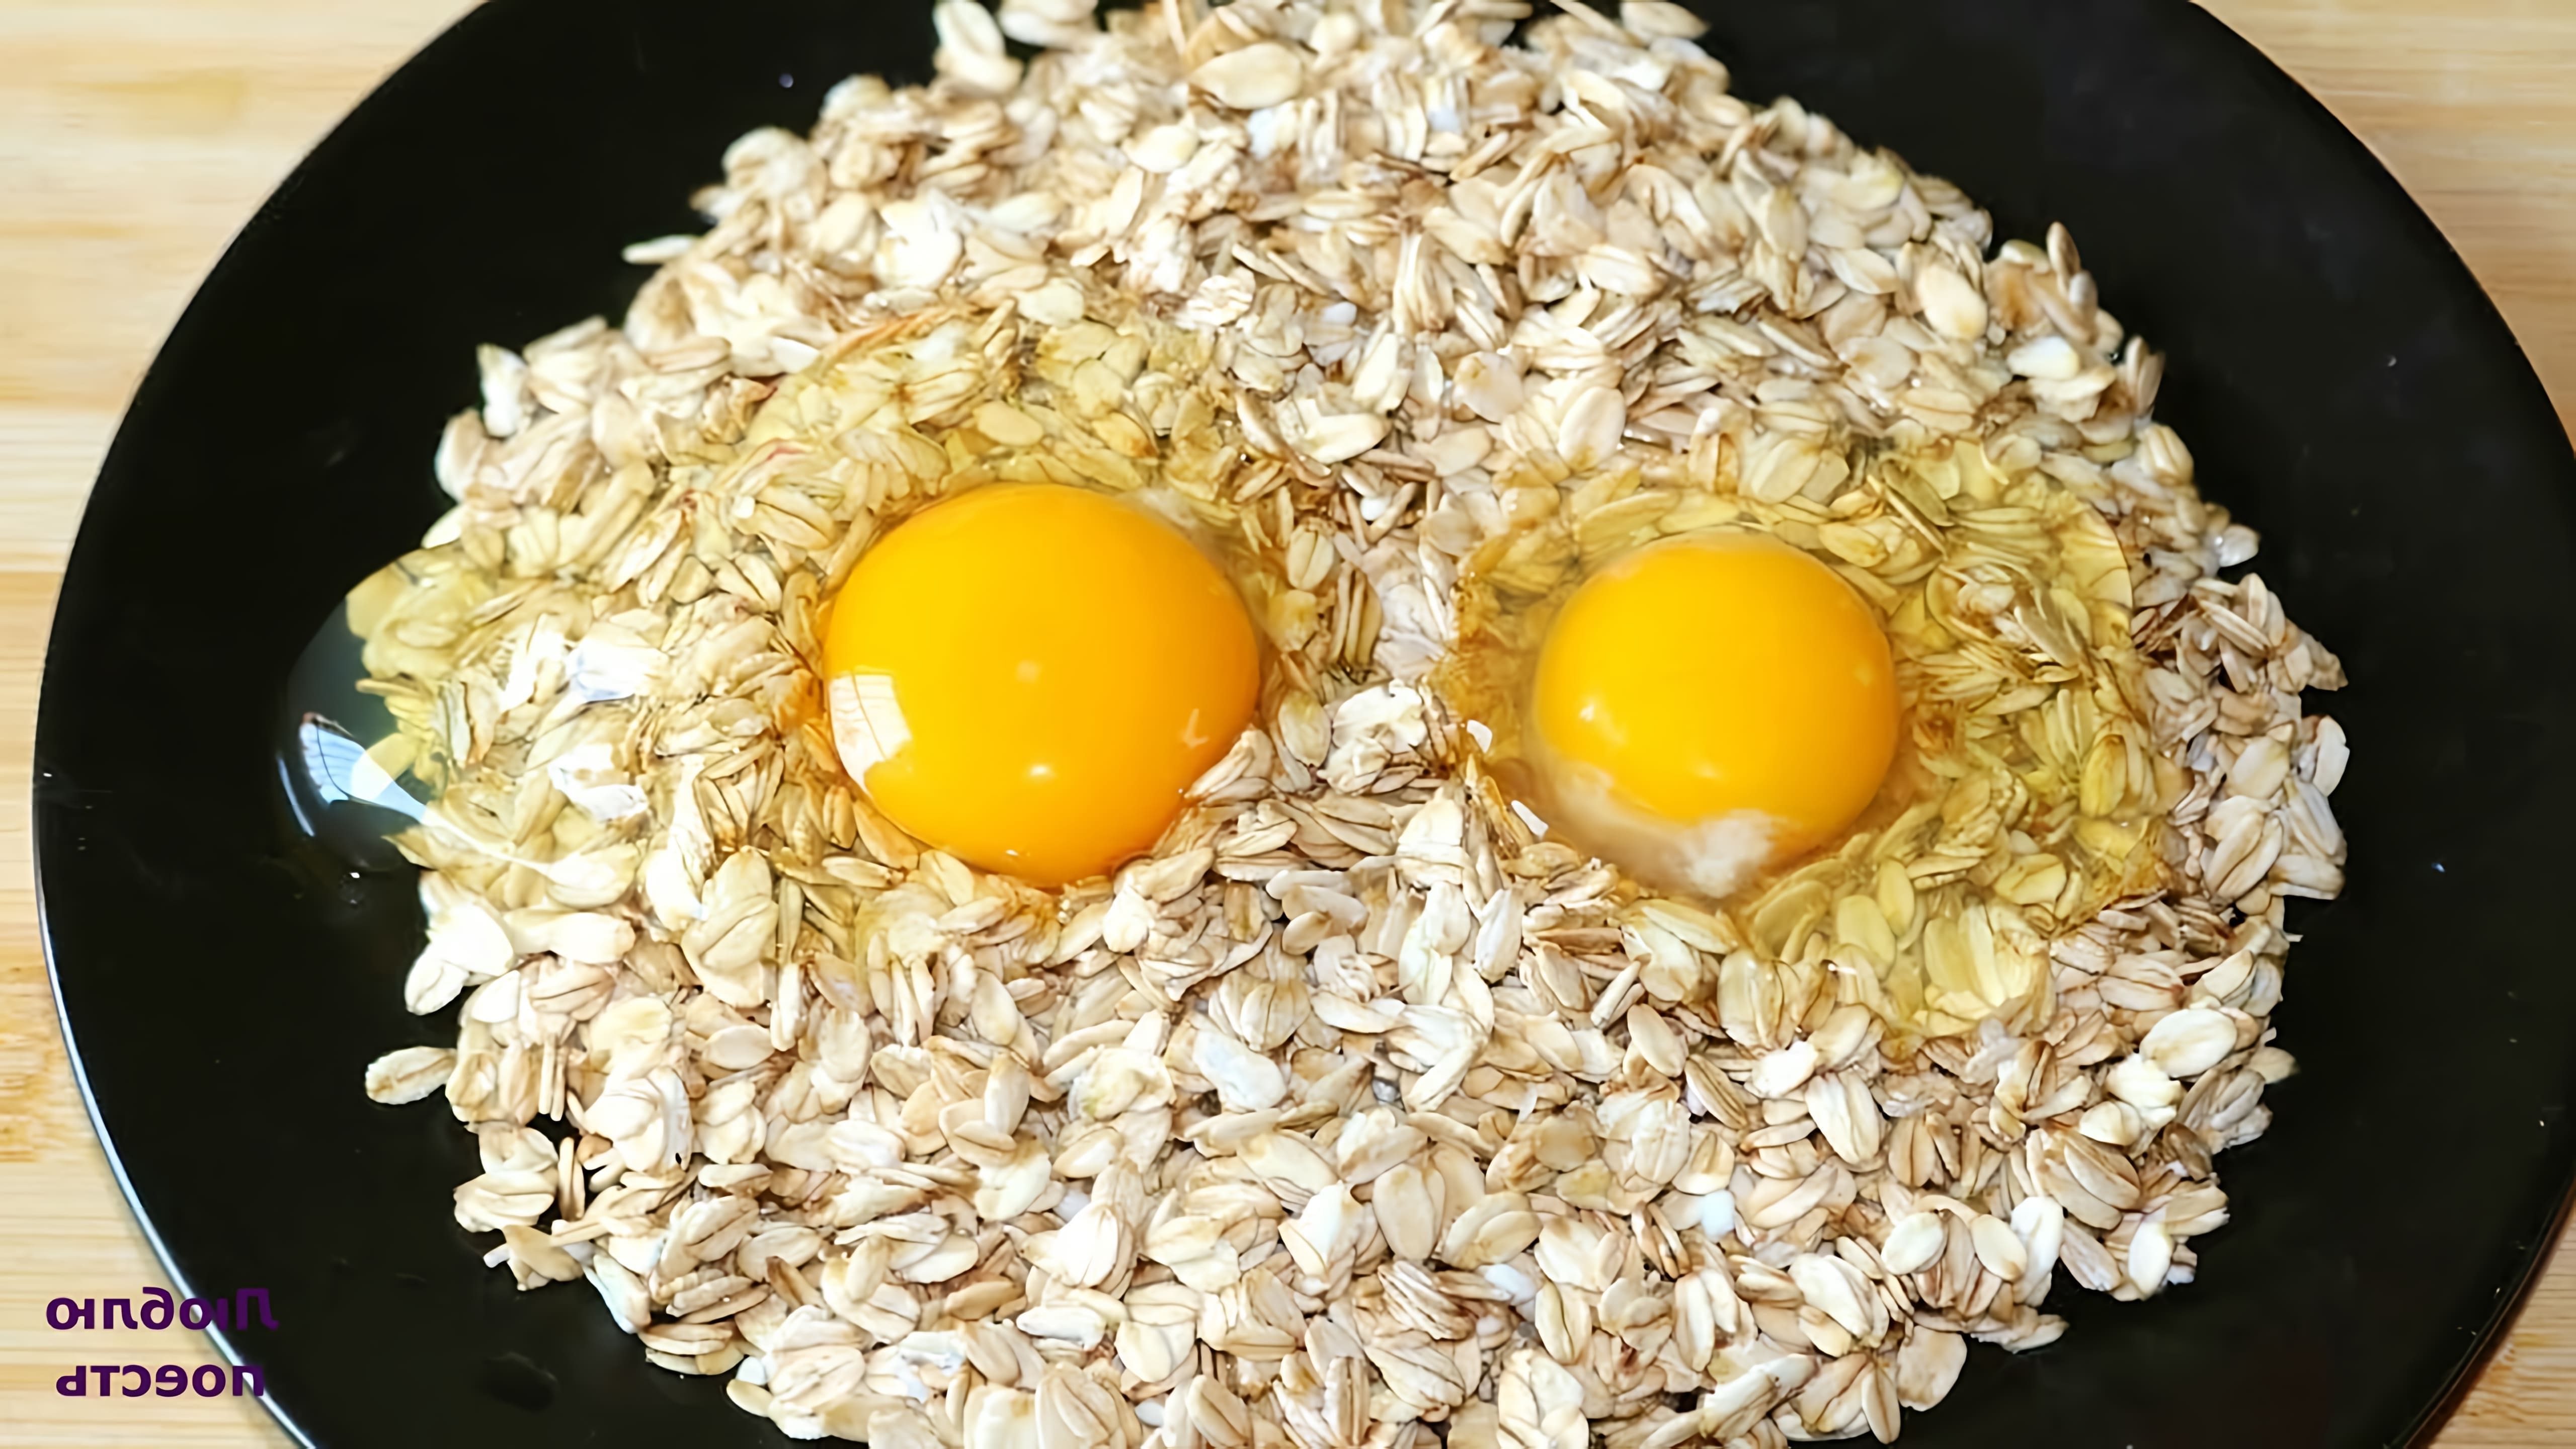 Видео как приготовить быстрый и легкий завтрак из яиц и овсянки, который занимает всего 5 минут на приготовление